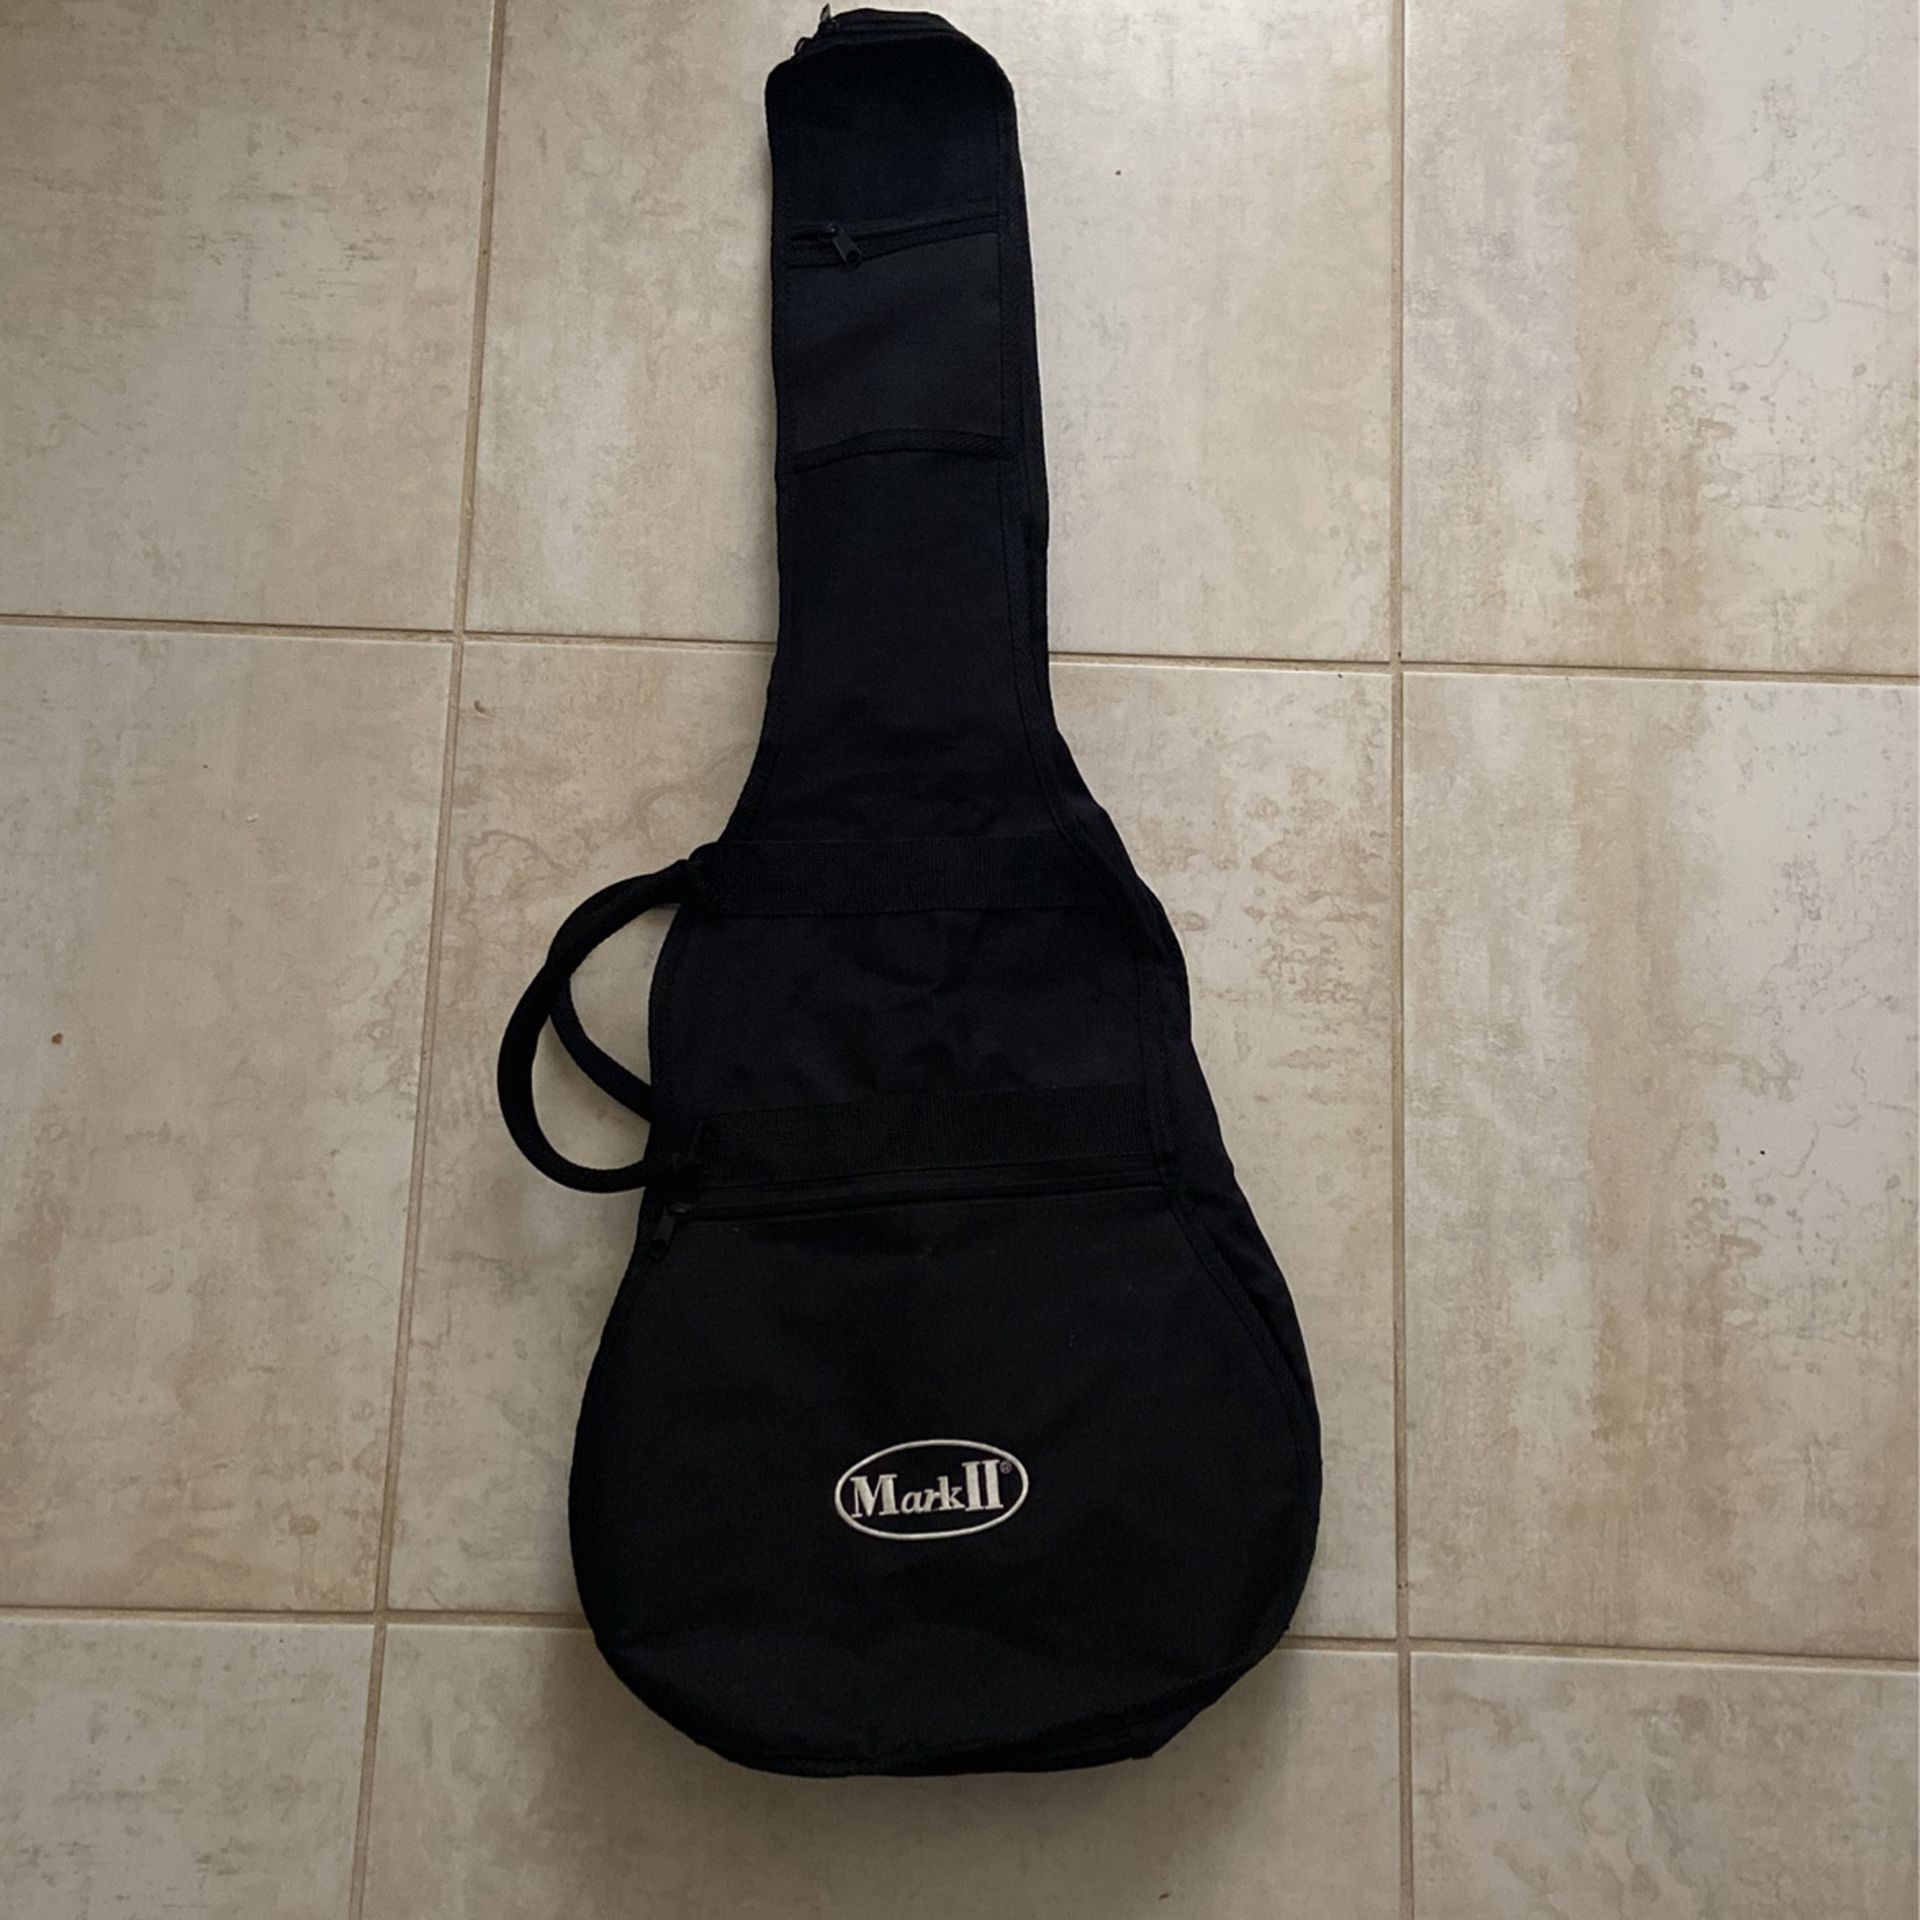 Mark II guitar Bag